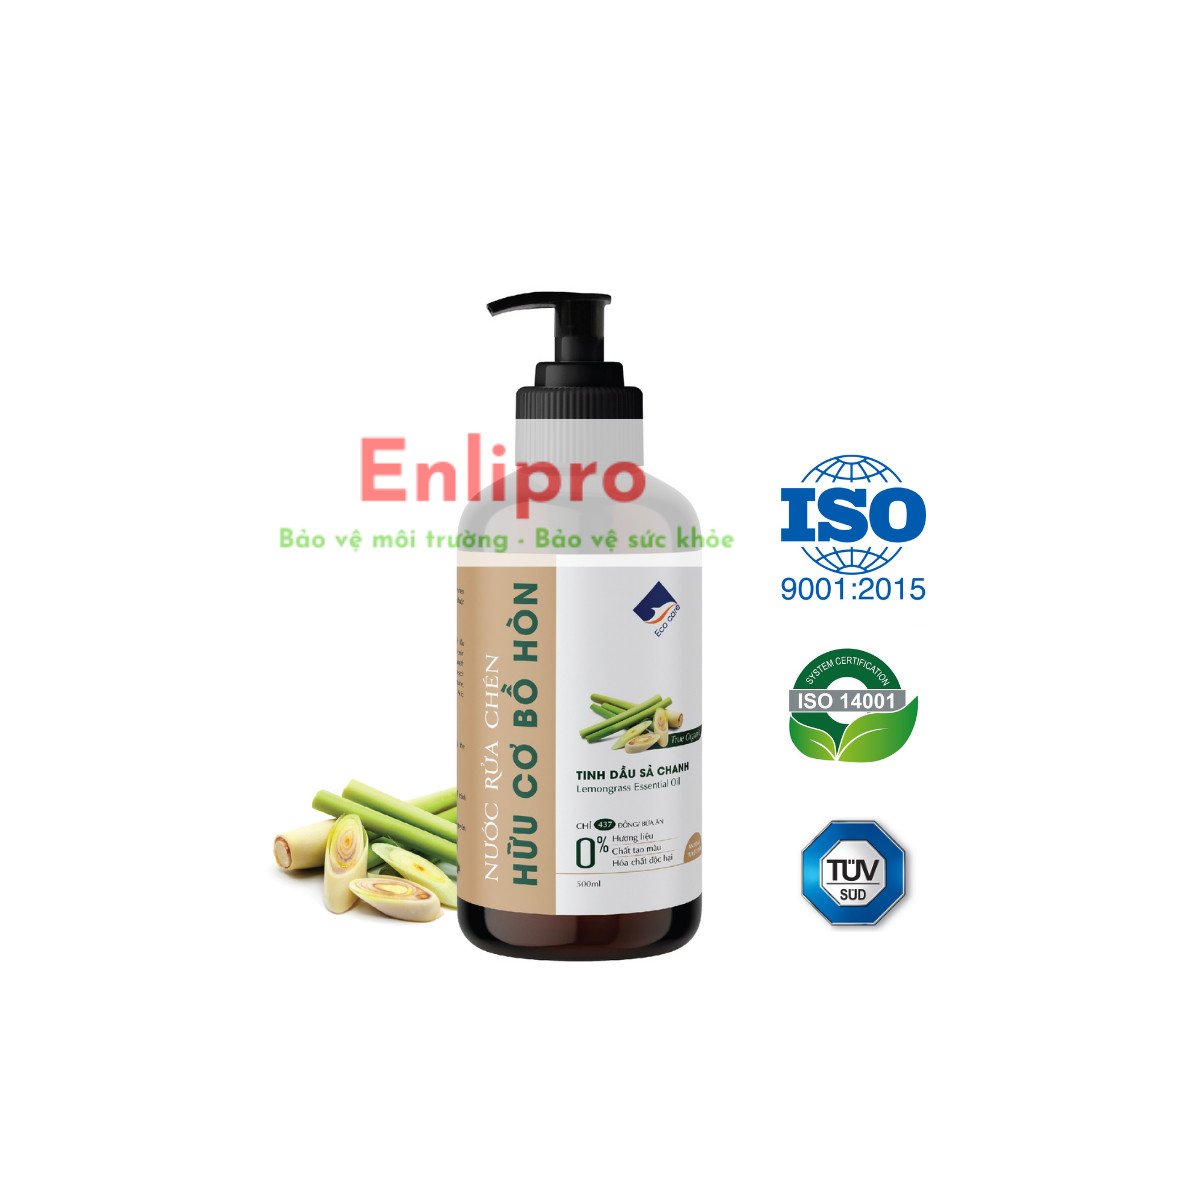 Ecocare - nước rửa chén hữu cơ tinh dầu sả chanh - 500ml